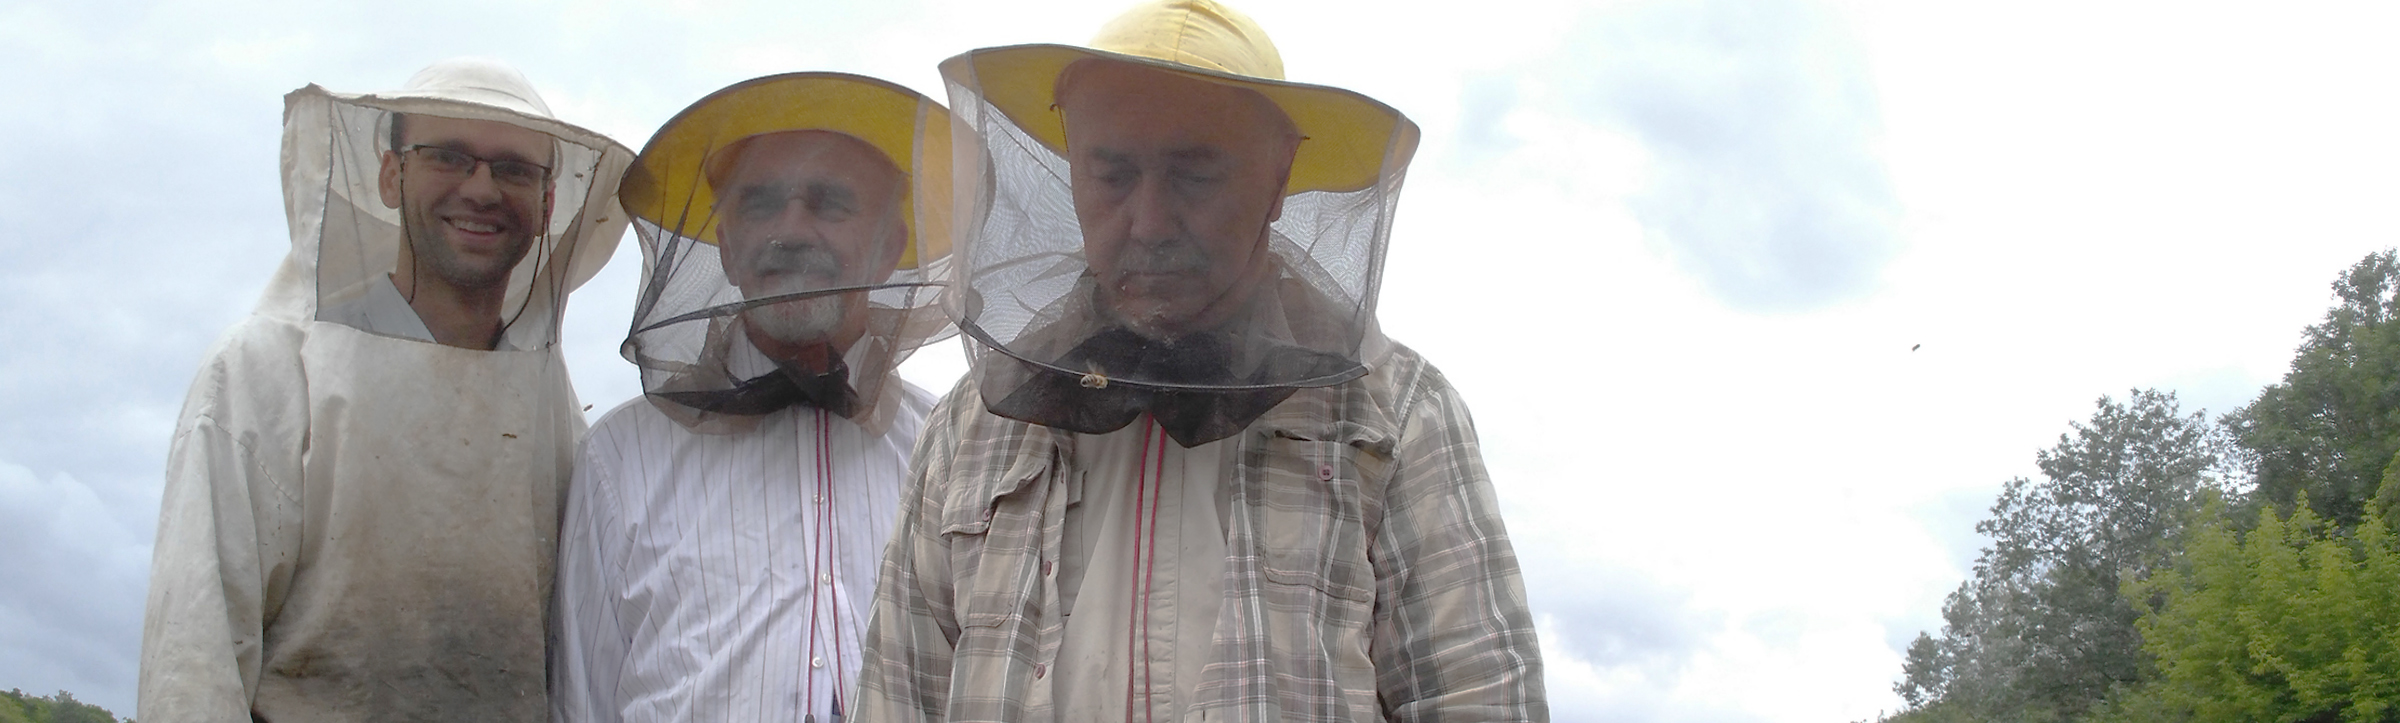 Rodzinne zdjęcie pszczelarzy w pasiece Omomom.